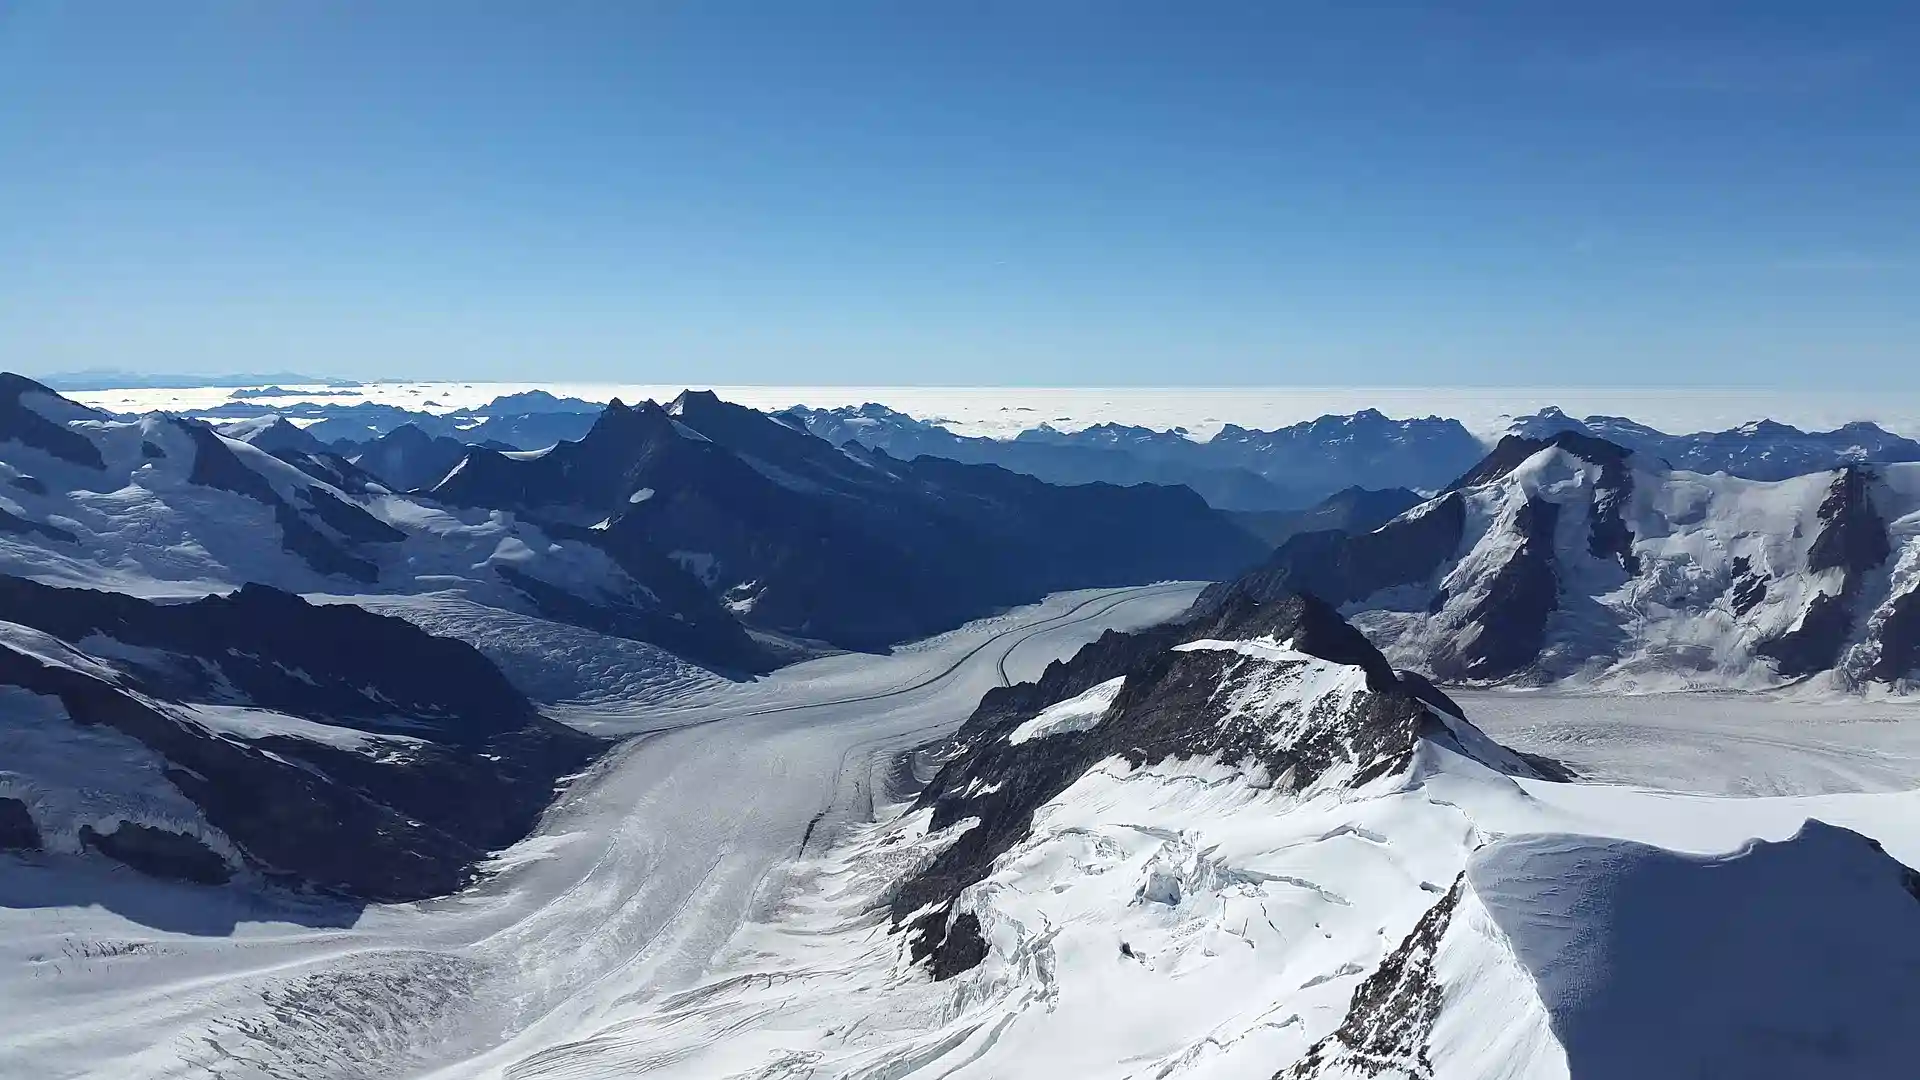 Day 7 - Montreux - visit Glacier 3000 Excursion